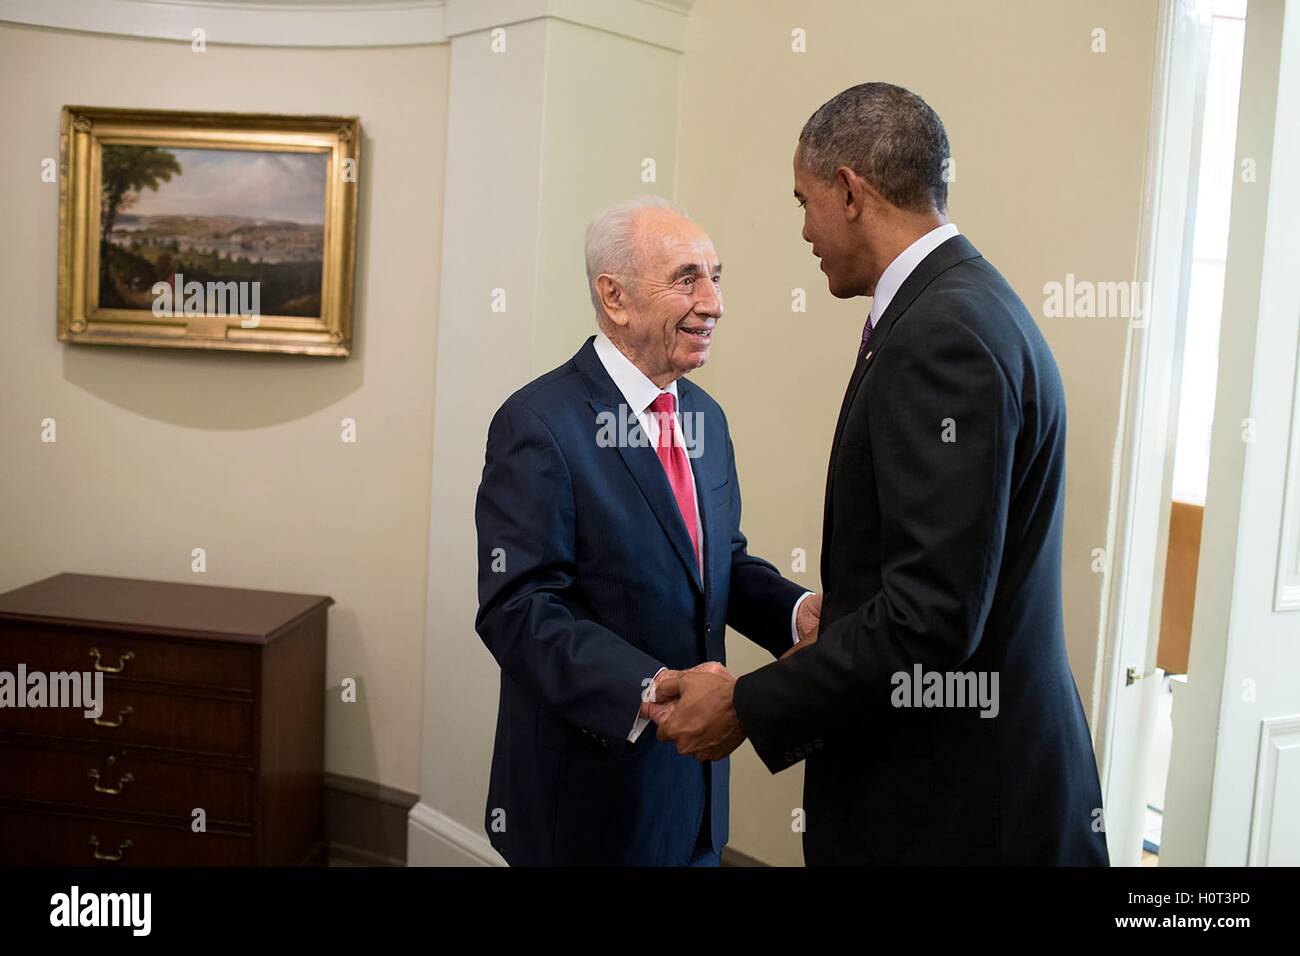 Le président américain Barack Obama salue le président israélien Shimon Peres à l'extérieur de la Maison Blanche Bureau Ovale le 25 juin 2014 à Washington, DC. Banque D'Images